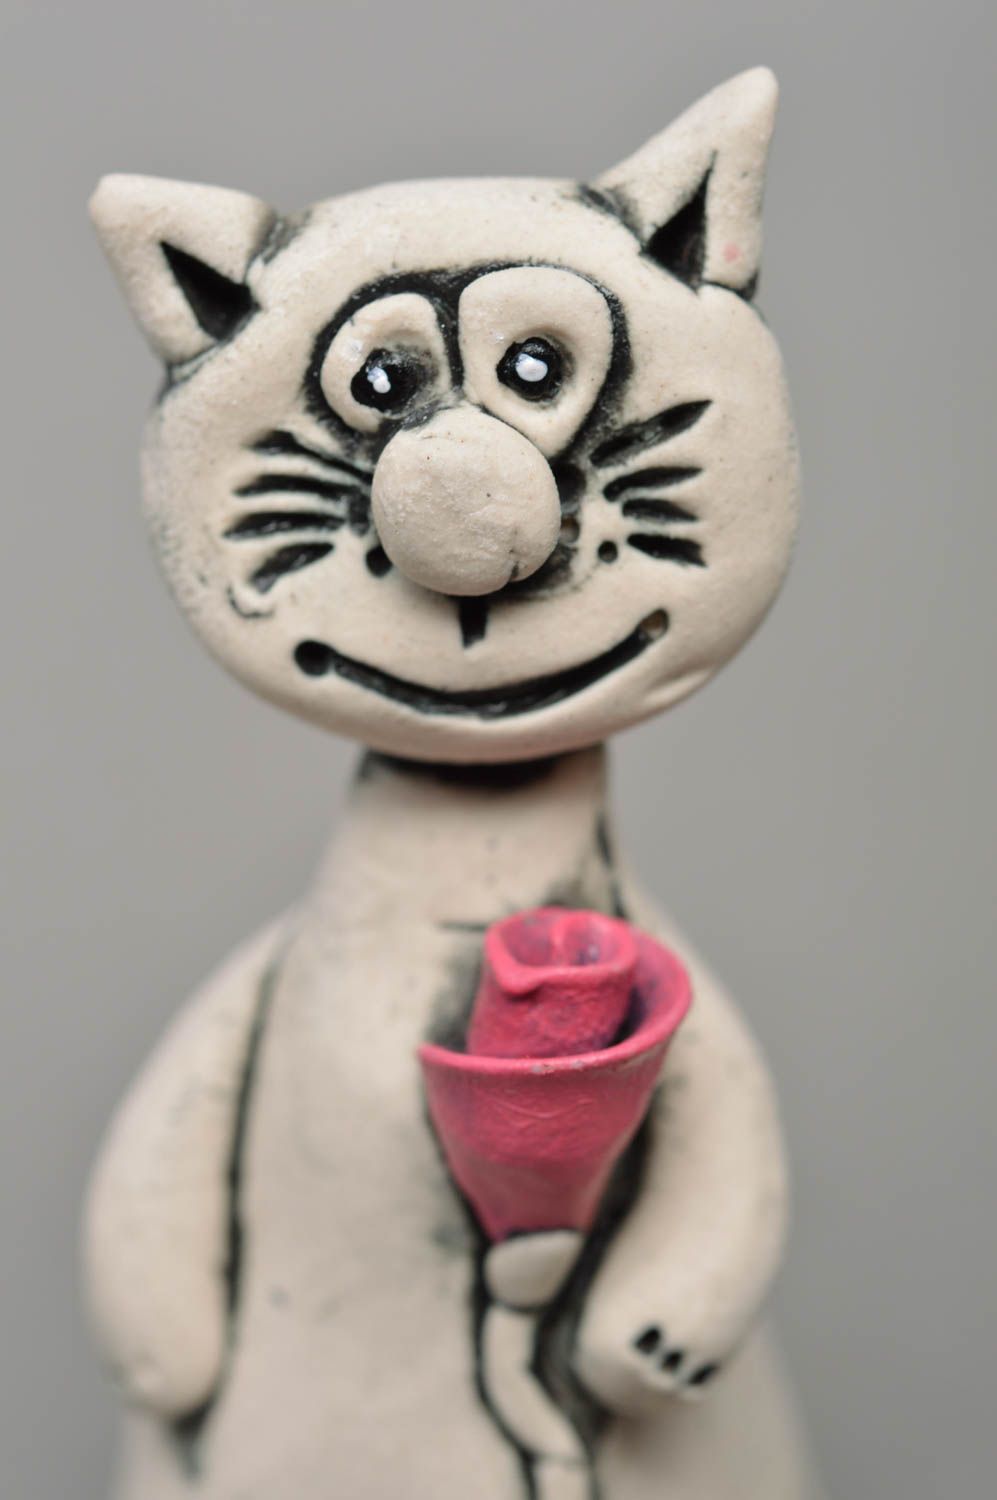 Фарфоровая статуэтка расписанная глазурью и акрилом хэнд мэйд Кот с розой фото 2